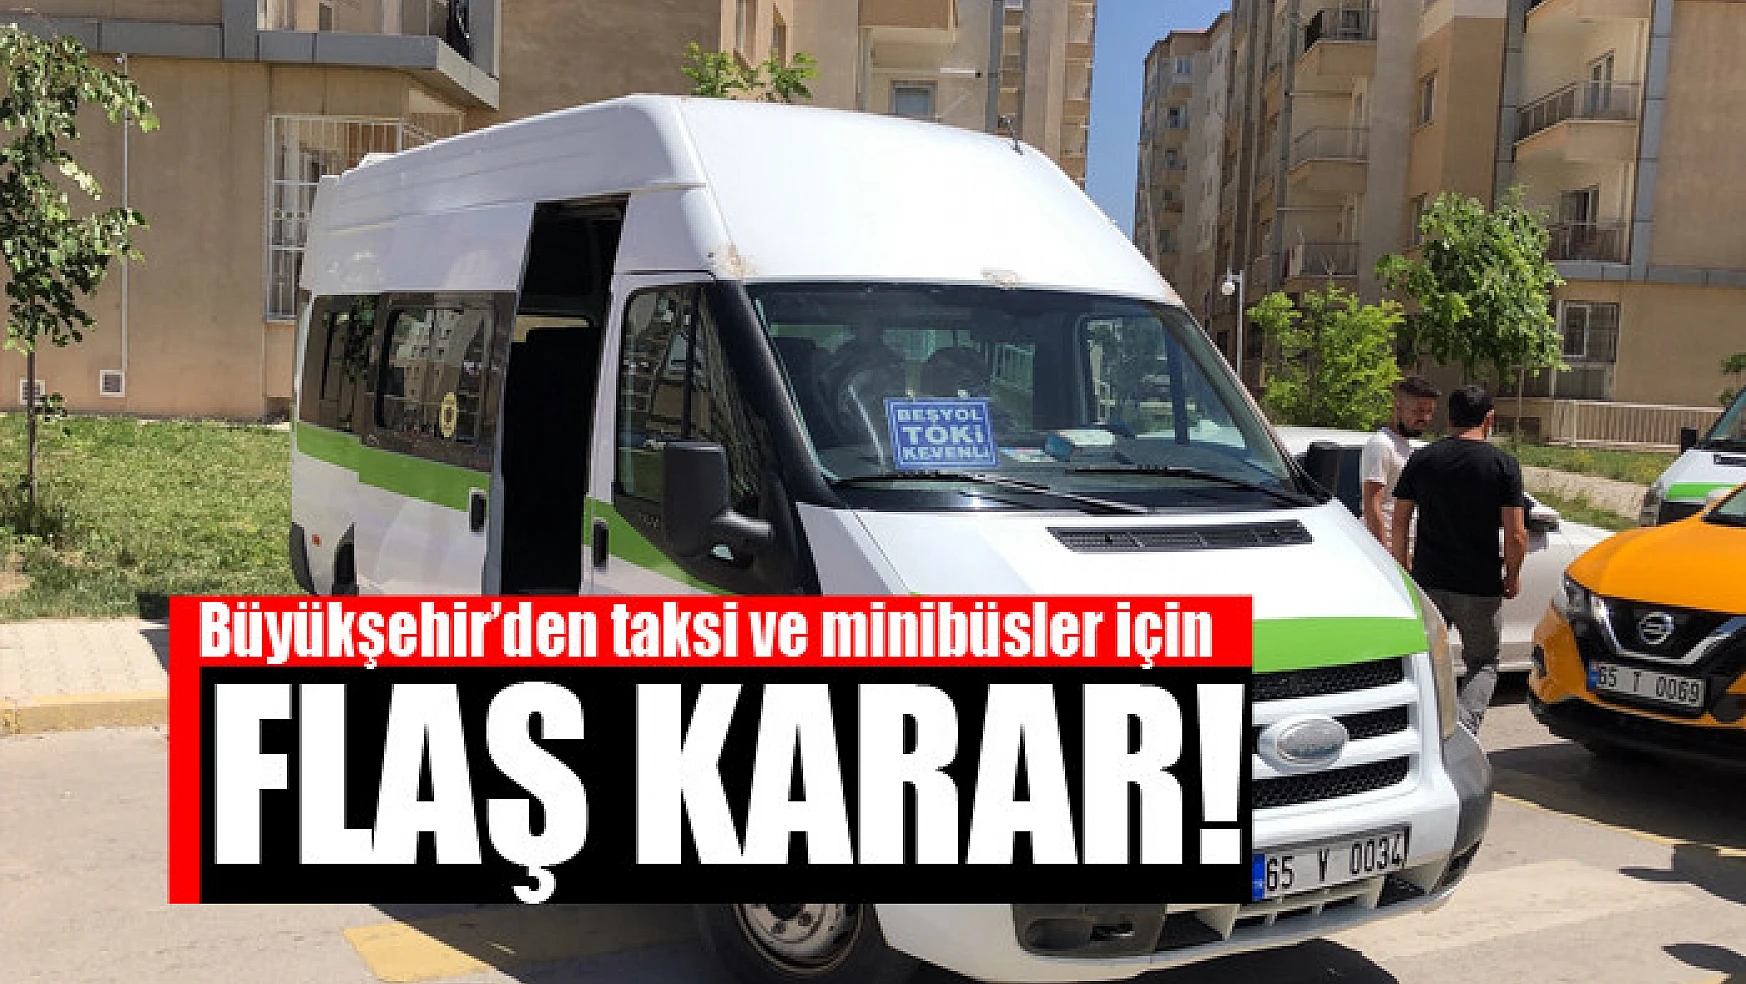 Büyükşehir'den taksi ve minibüsler için flaş karar!